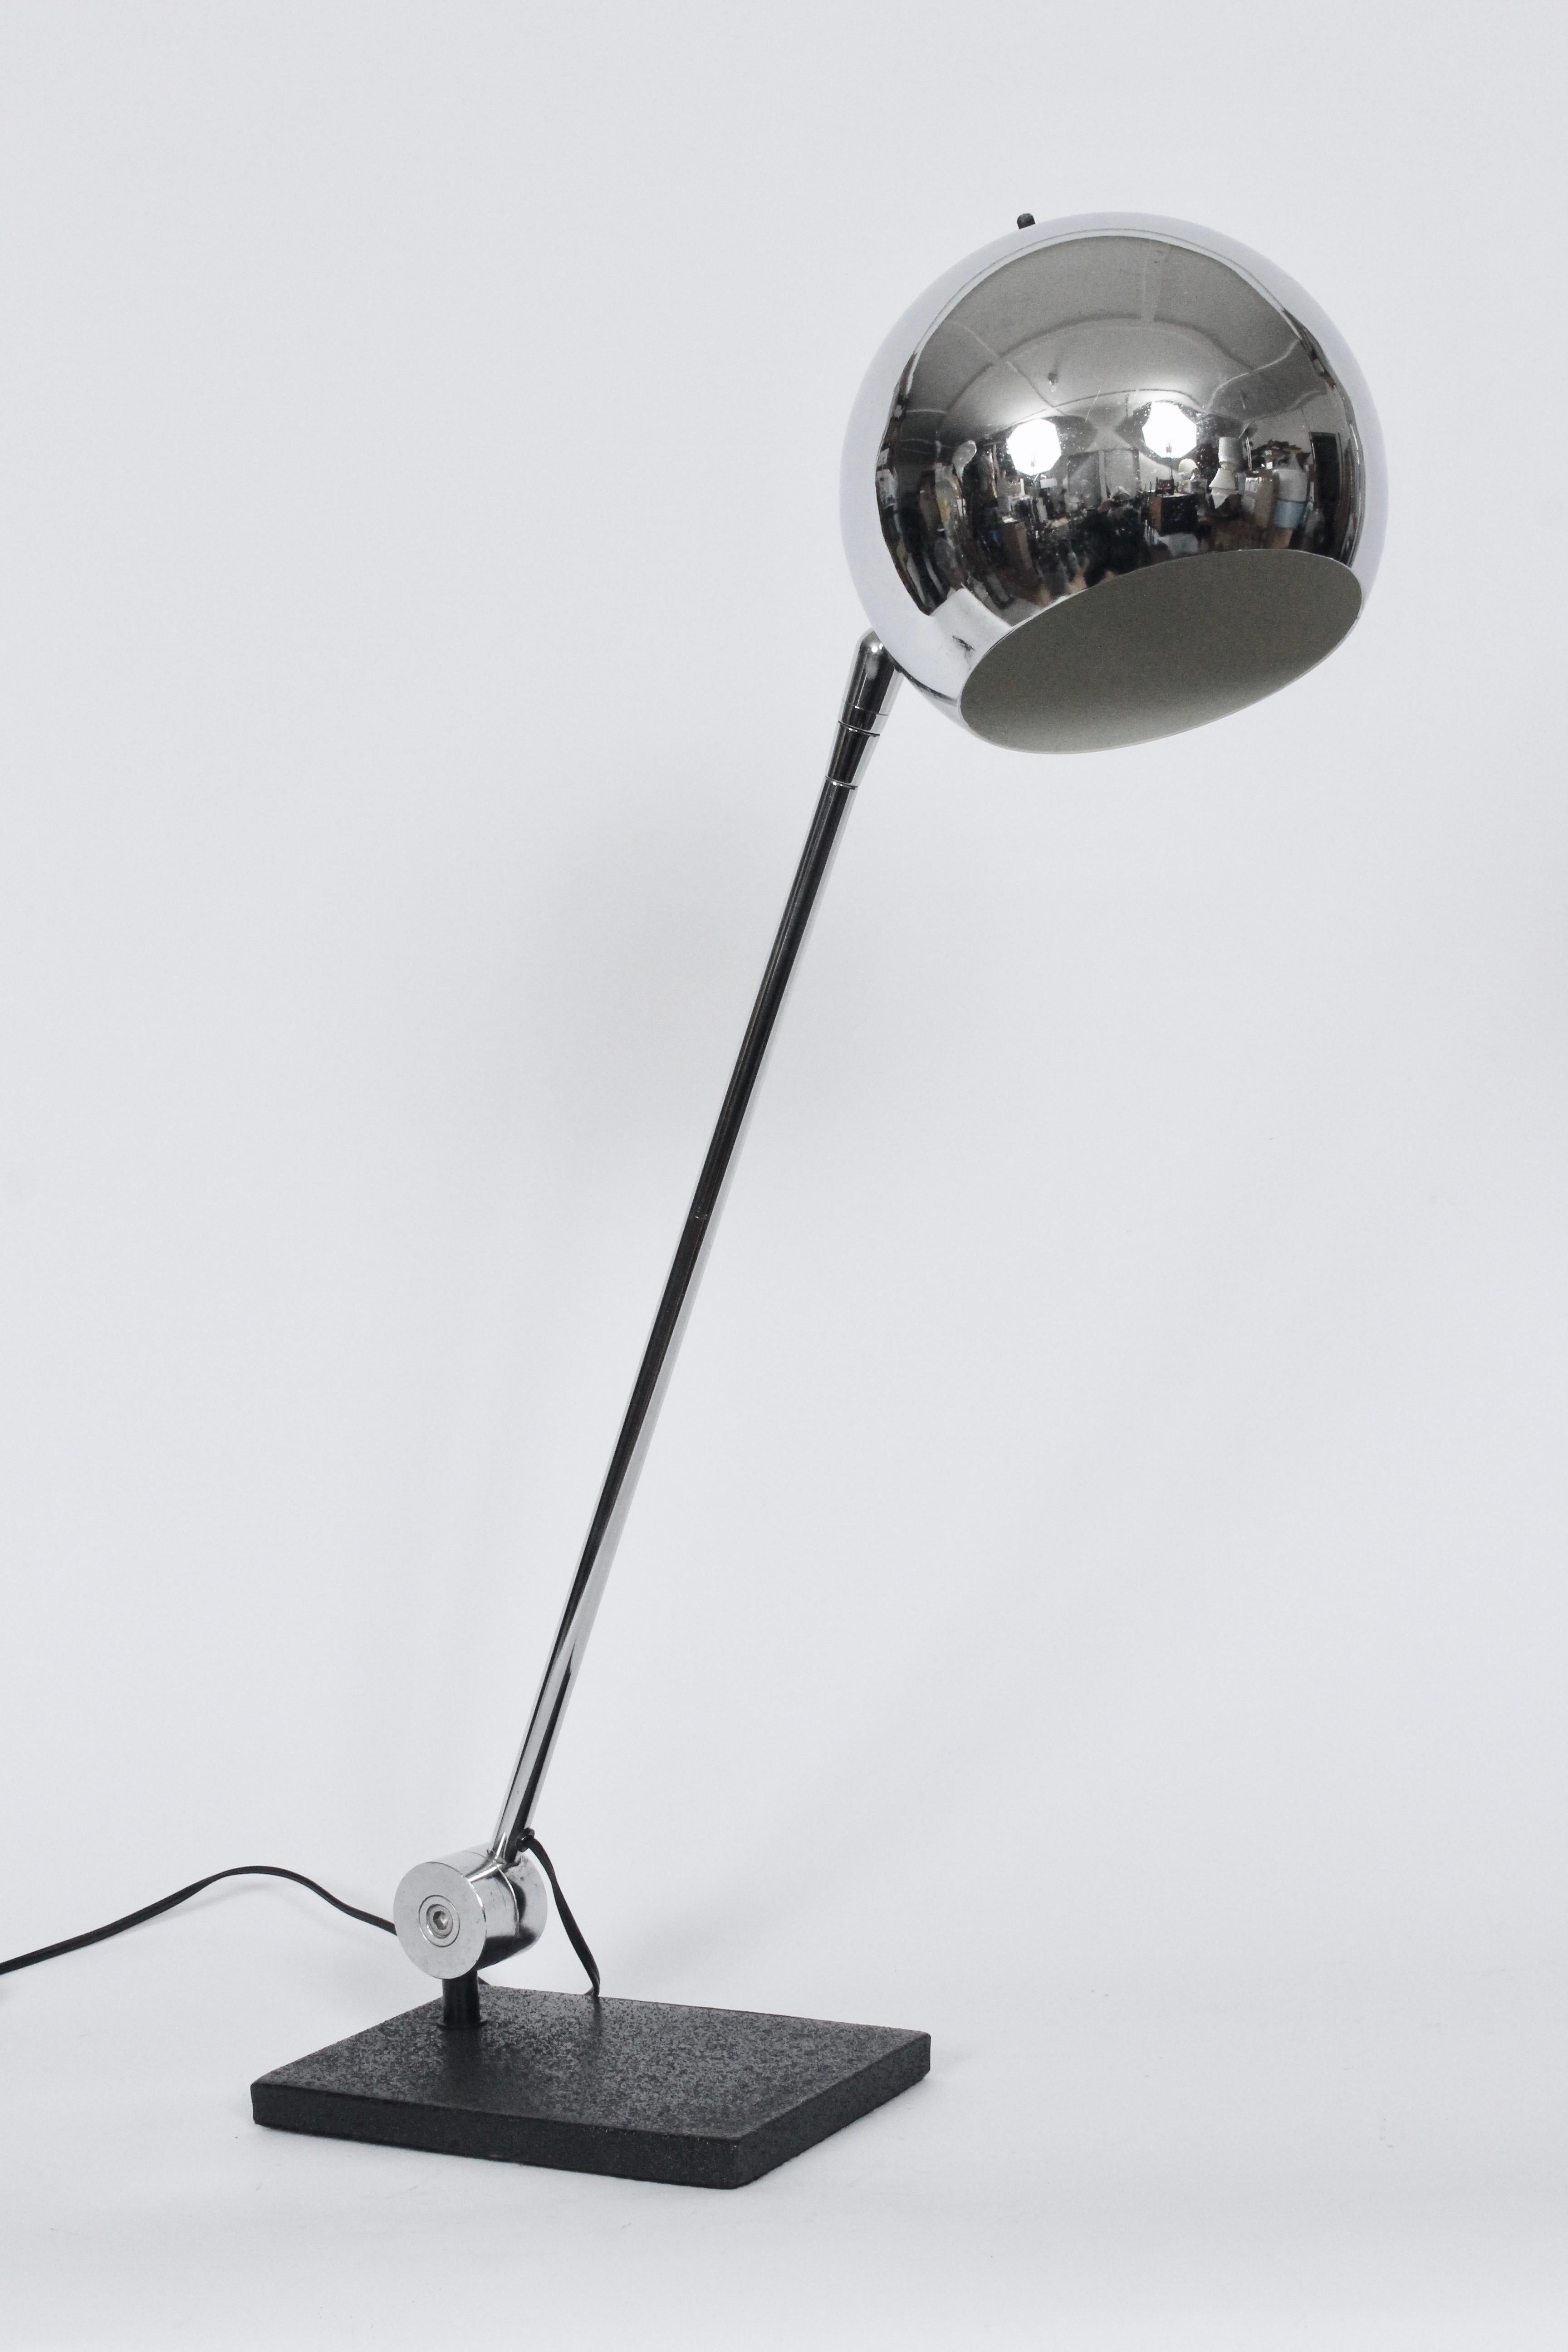 Robert Sonneman Articulating Chrome Orb Table Lamp on Black Base For Sale 2